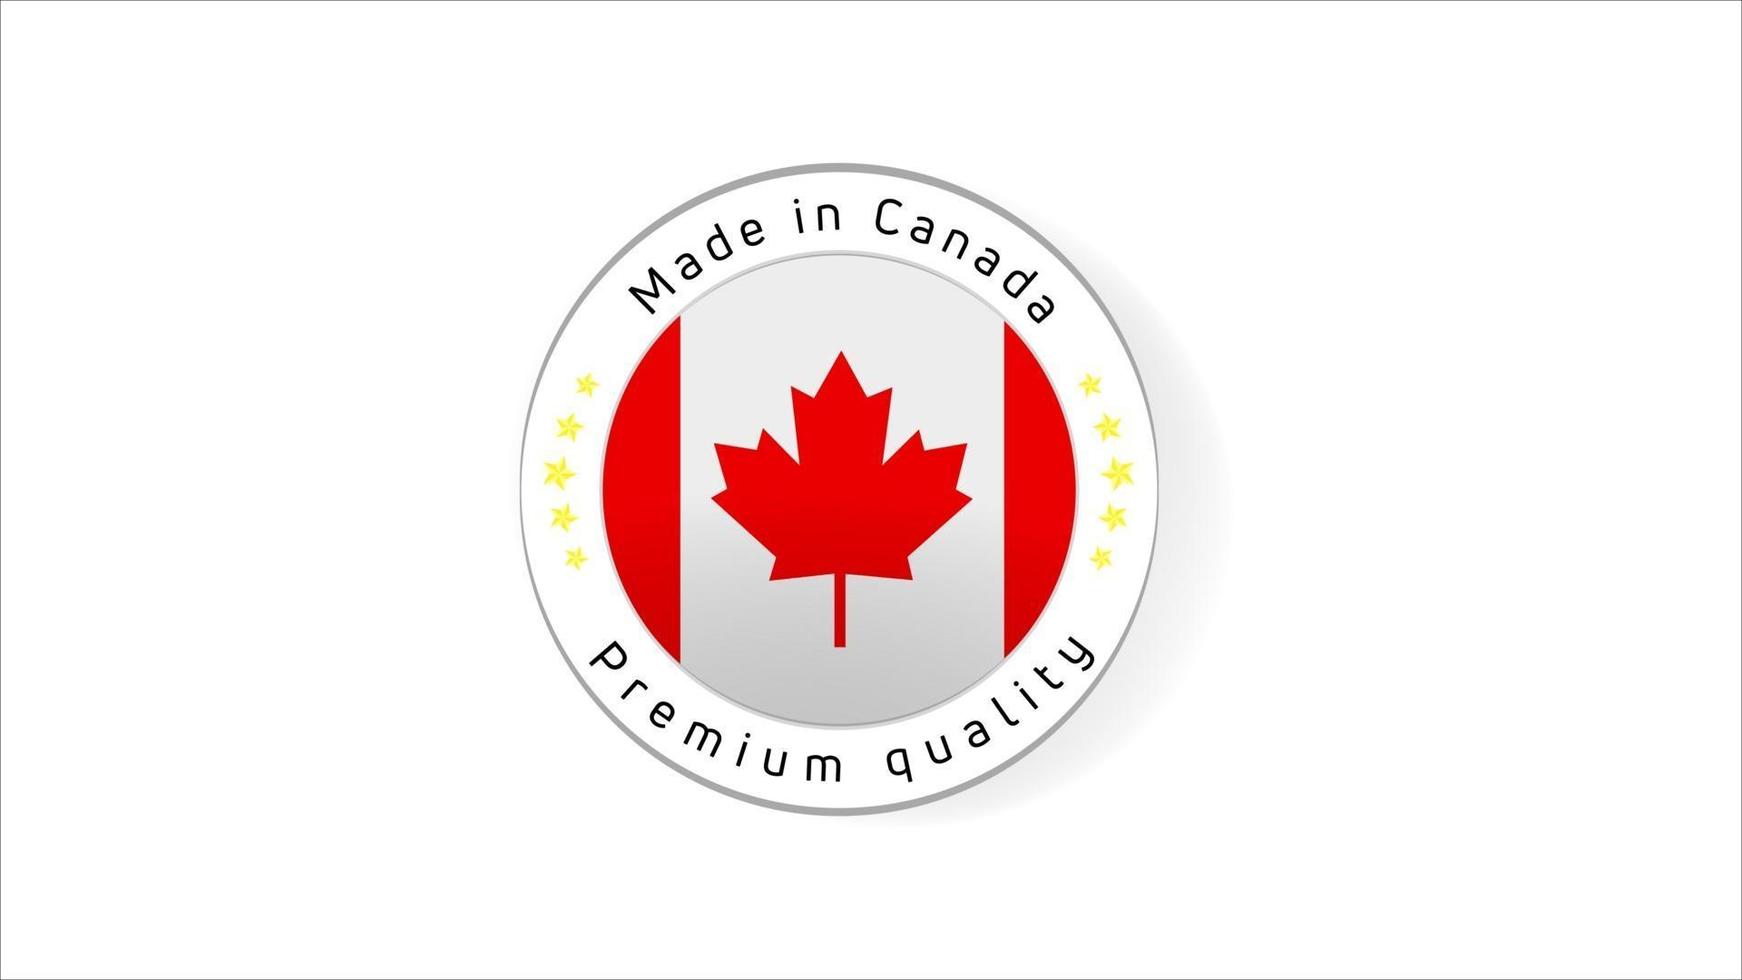 Hergestellt in Kanada-Etiketten. Kanada Qualitätssiegel. Qualitätszeichen-Vektorsymbol für Tags, Abzeichen, Aufkleber, Emblem, Produkt. vektor